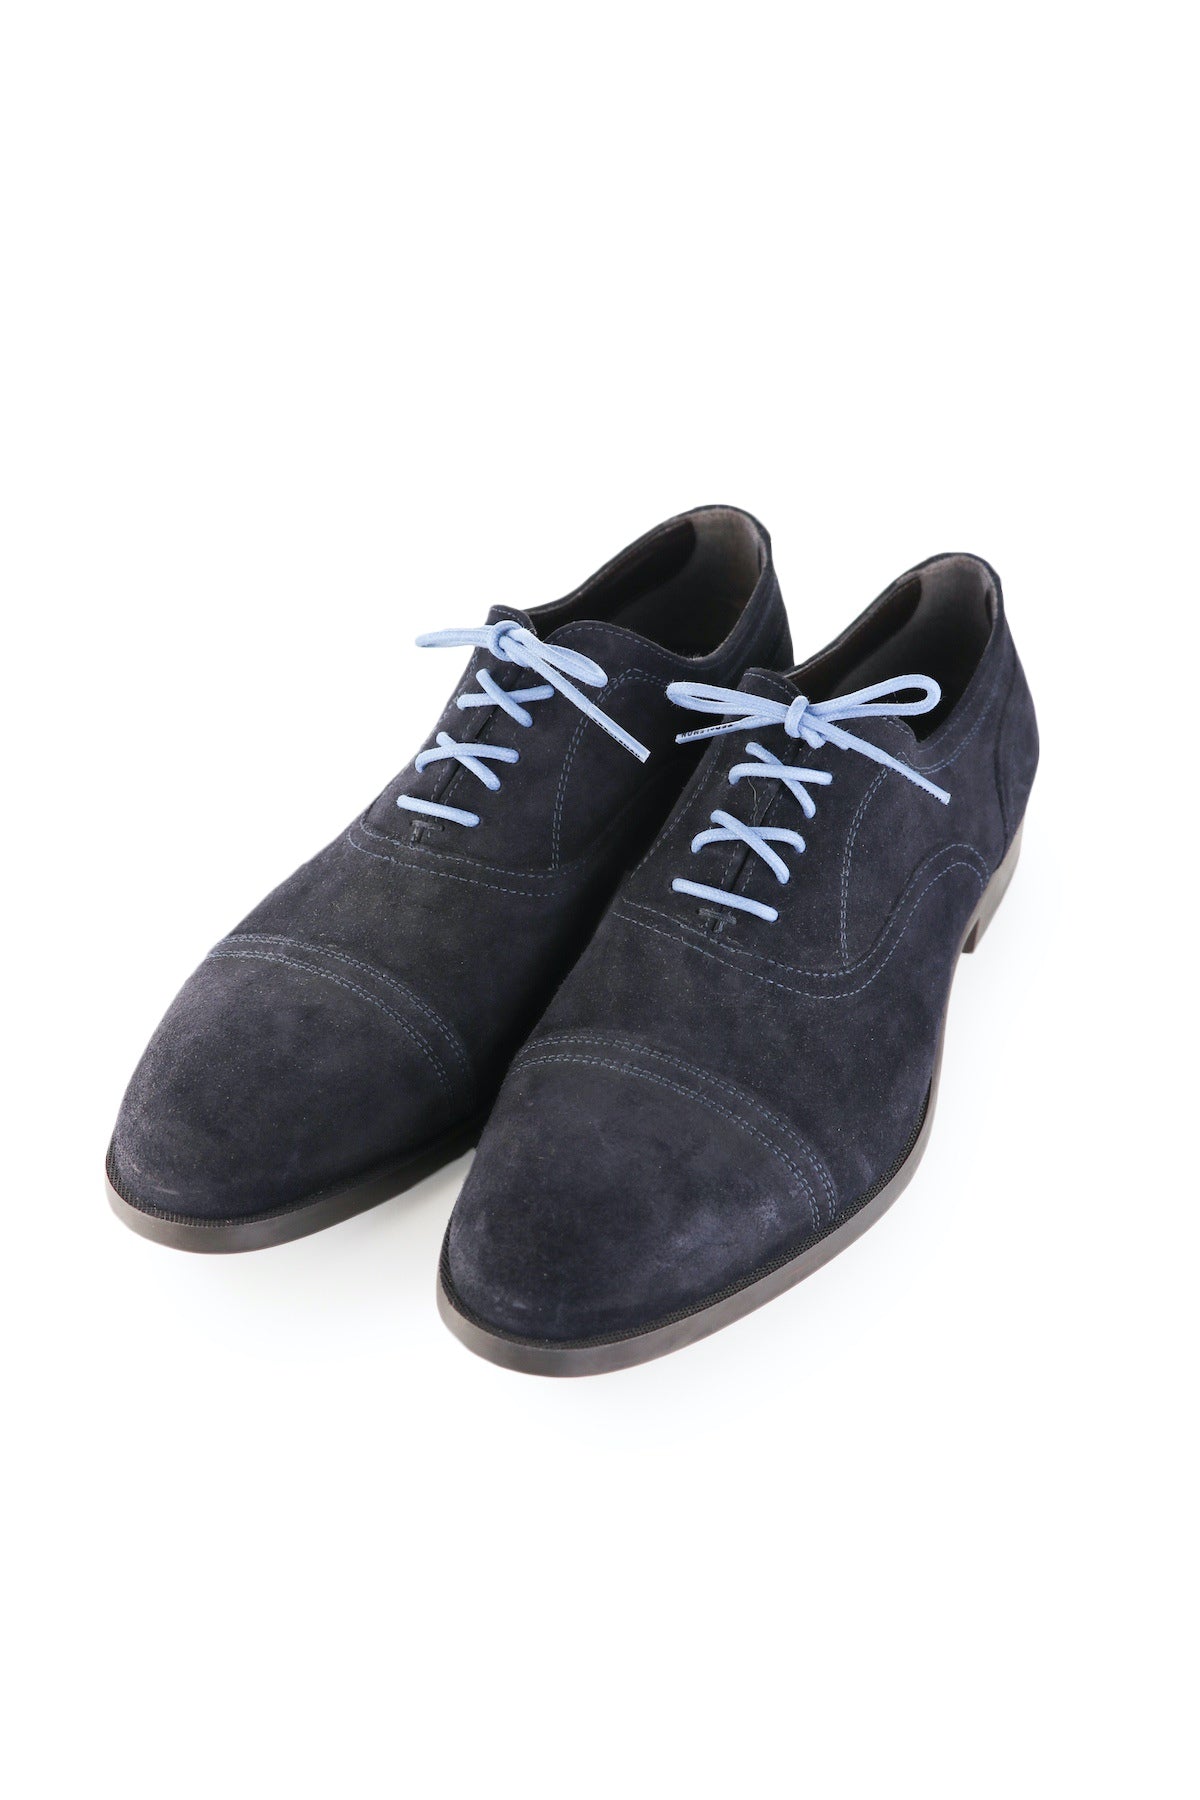 Blue Shoe Laces - Ocean Blue Shoelaces – Ted and Lemon